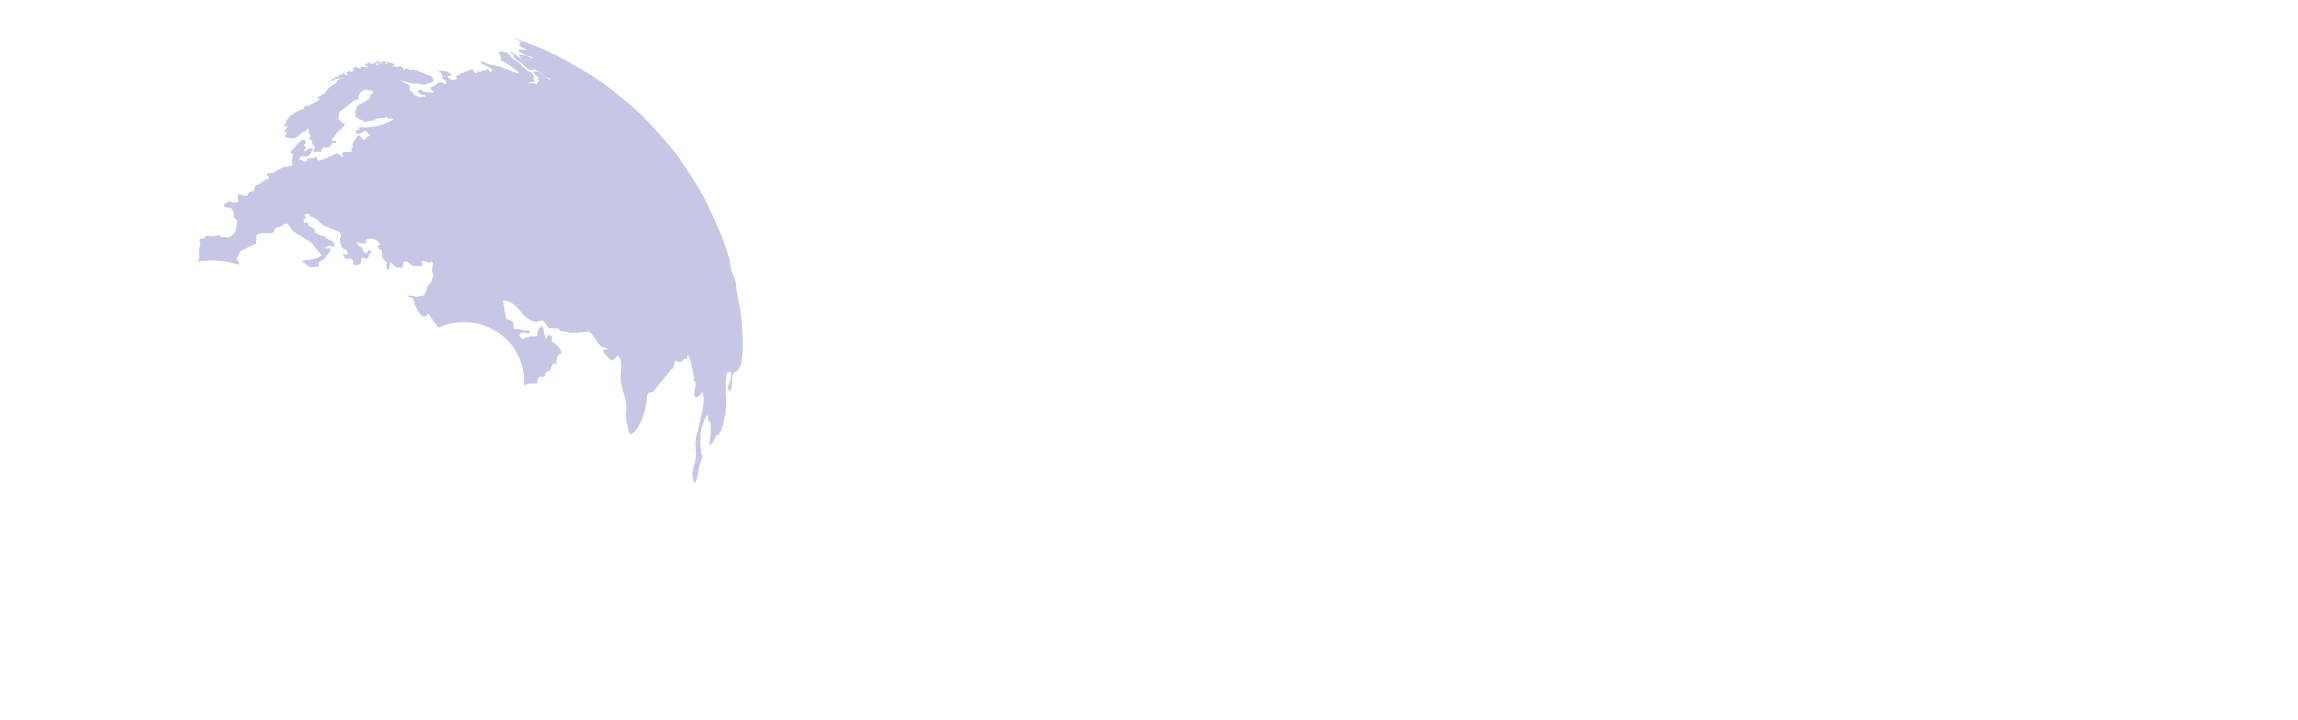 Conference-center_Logo-Full-name_White-ENG